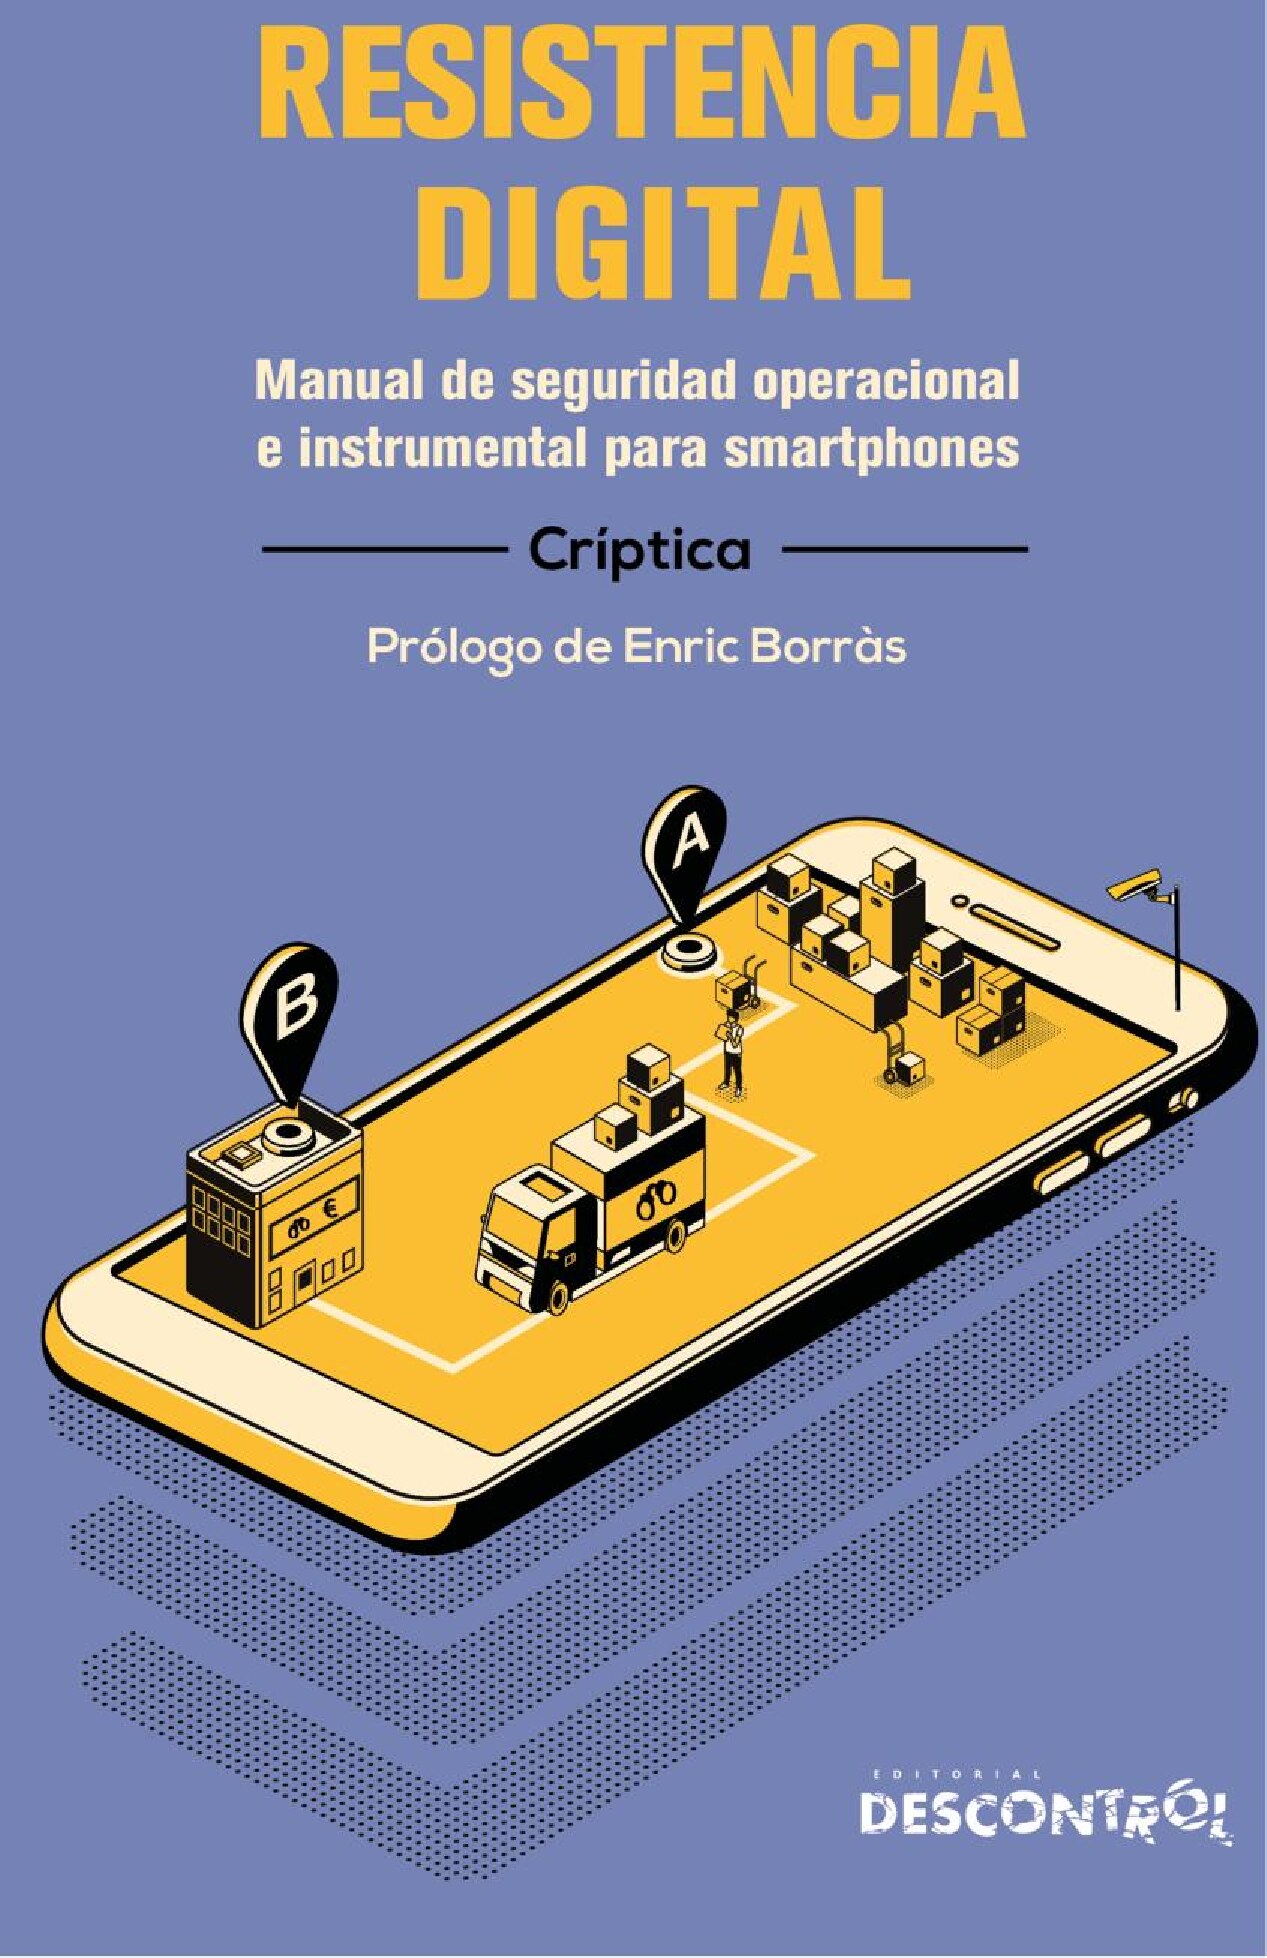 Resistencia Digital: Manual de seguridad operacional e instrumental para smartphones